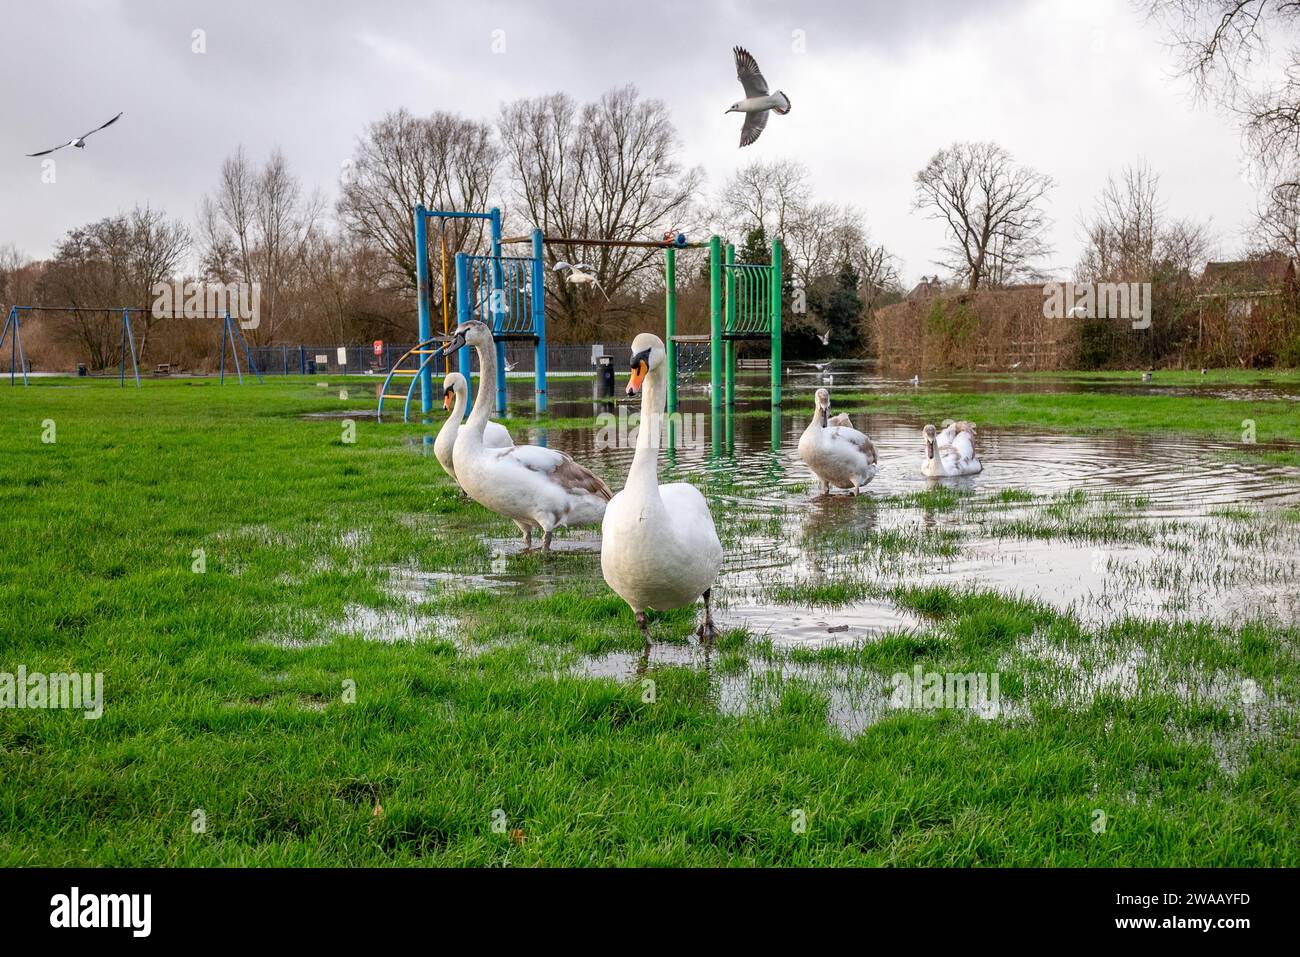 Fordingbridge, Hampshire, UK, 3. Januar 2024: Wetter. Sturm Henk hat den Wasserspiegel des Flusses Avon nach wochenlangen Regenfällen erhöht. Eine ganze Reihe von Schwänen wagen sich in den überfluteten Park am Fluss. Quelle: Paul Biggins/Alamy Live News Stockfoto